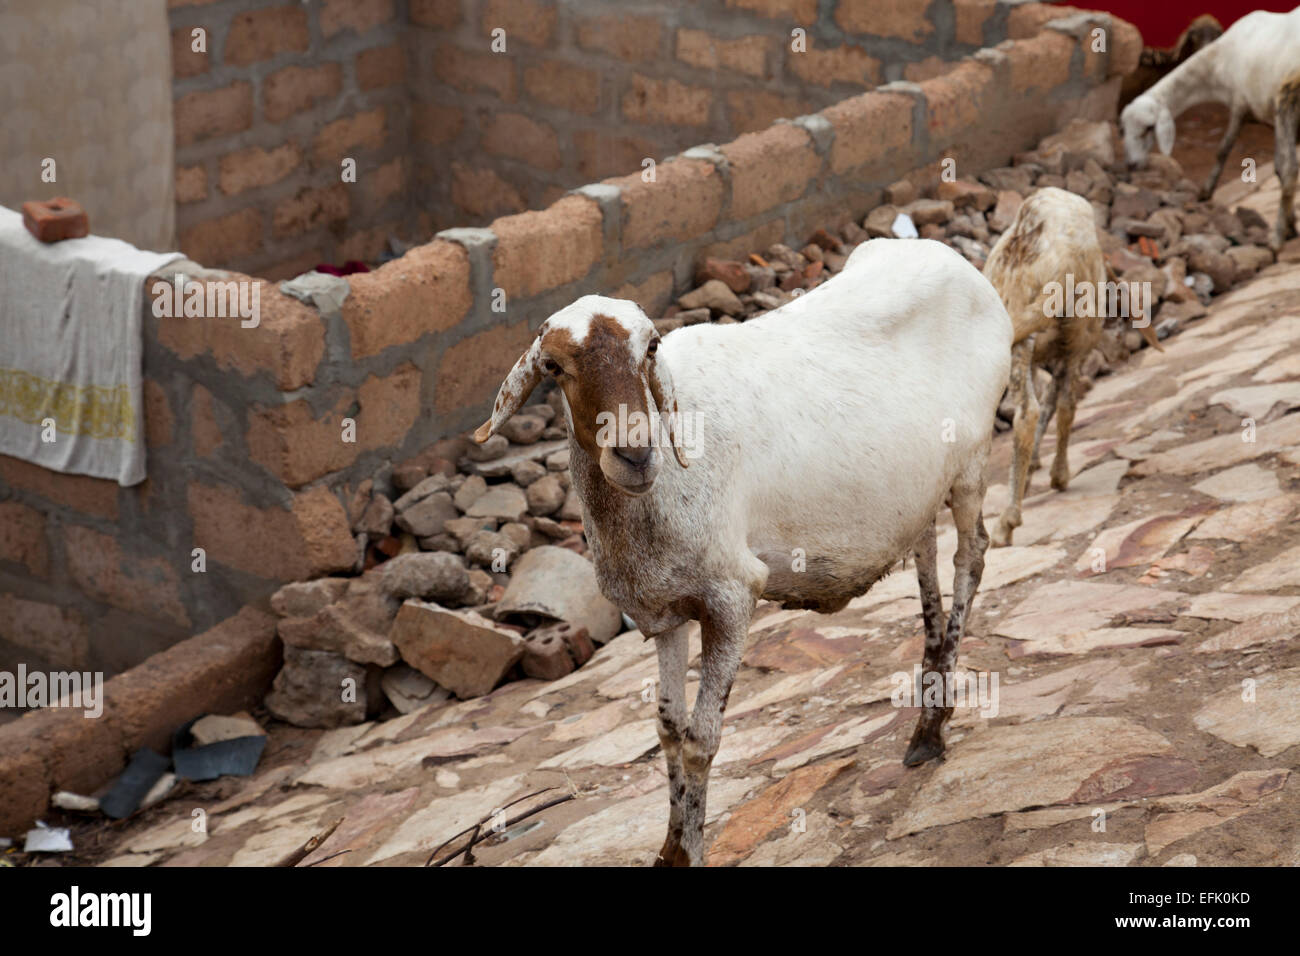 Familia de cabras deambulan por las calles en un barrio de chabolas área de Accra, Ghana Foto de stock